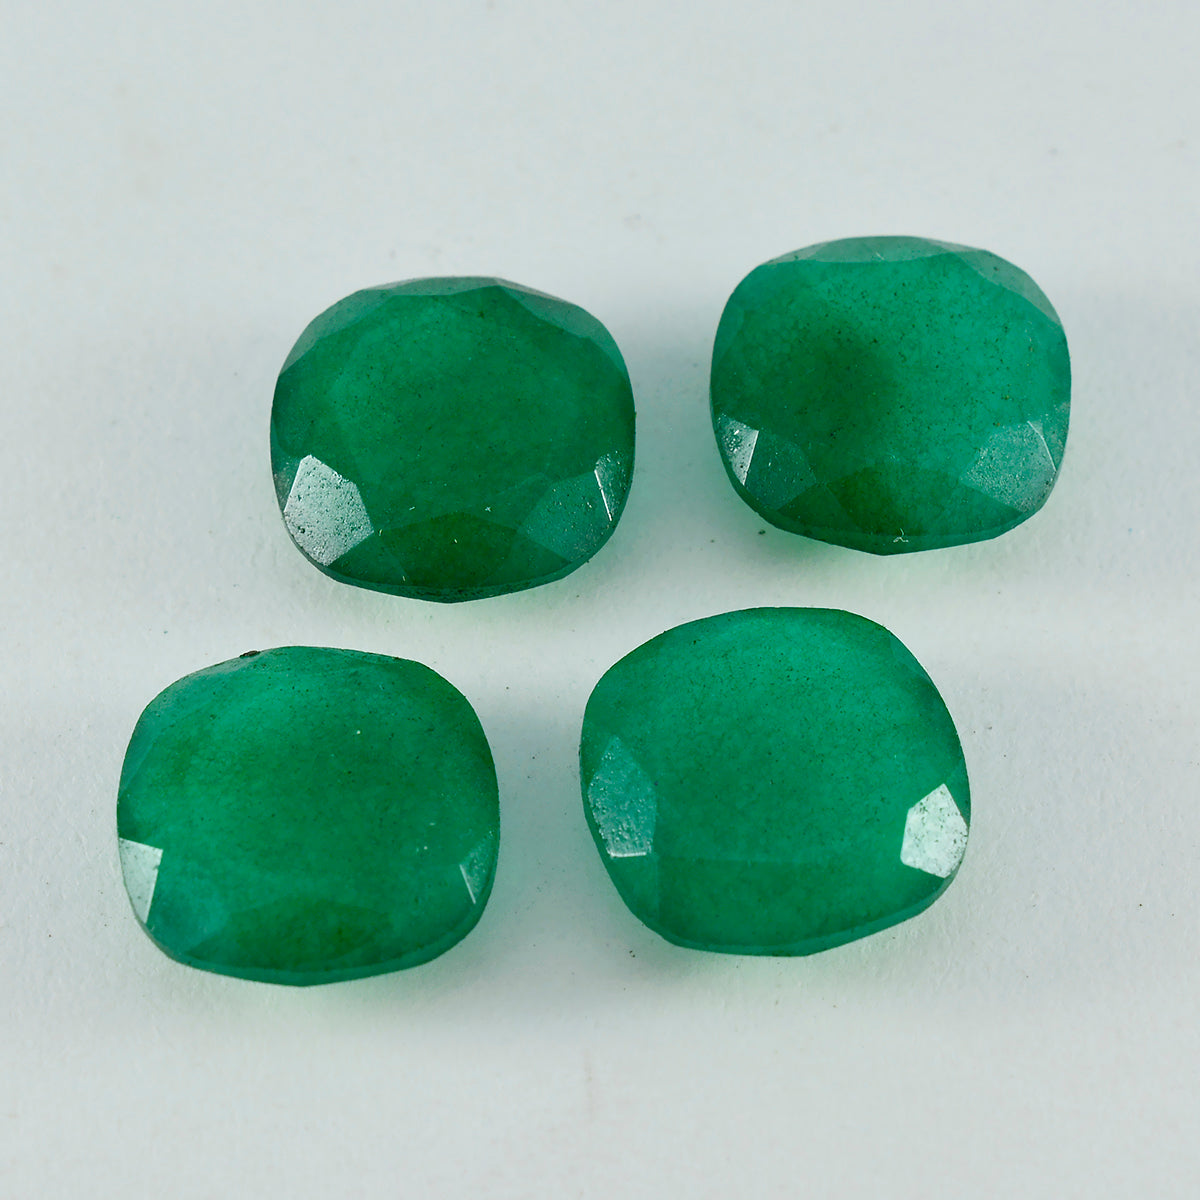 Riyogems 1 Stück echter grüner Jaspis, facettiert, 12 x 12 mm, Kissenform, schön aussehende, hochwertige lose Edelsteine